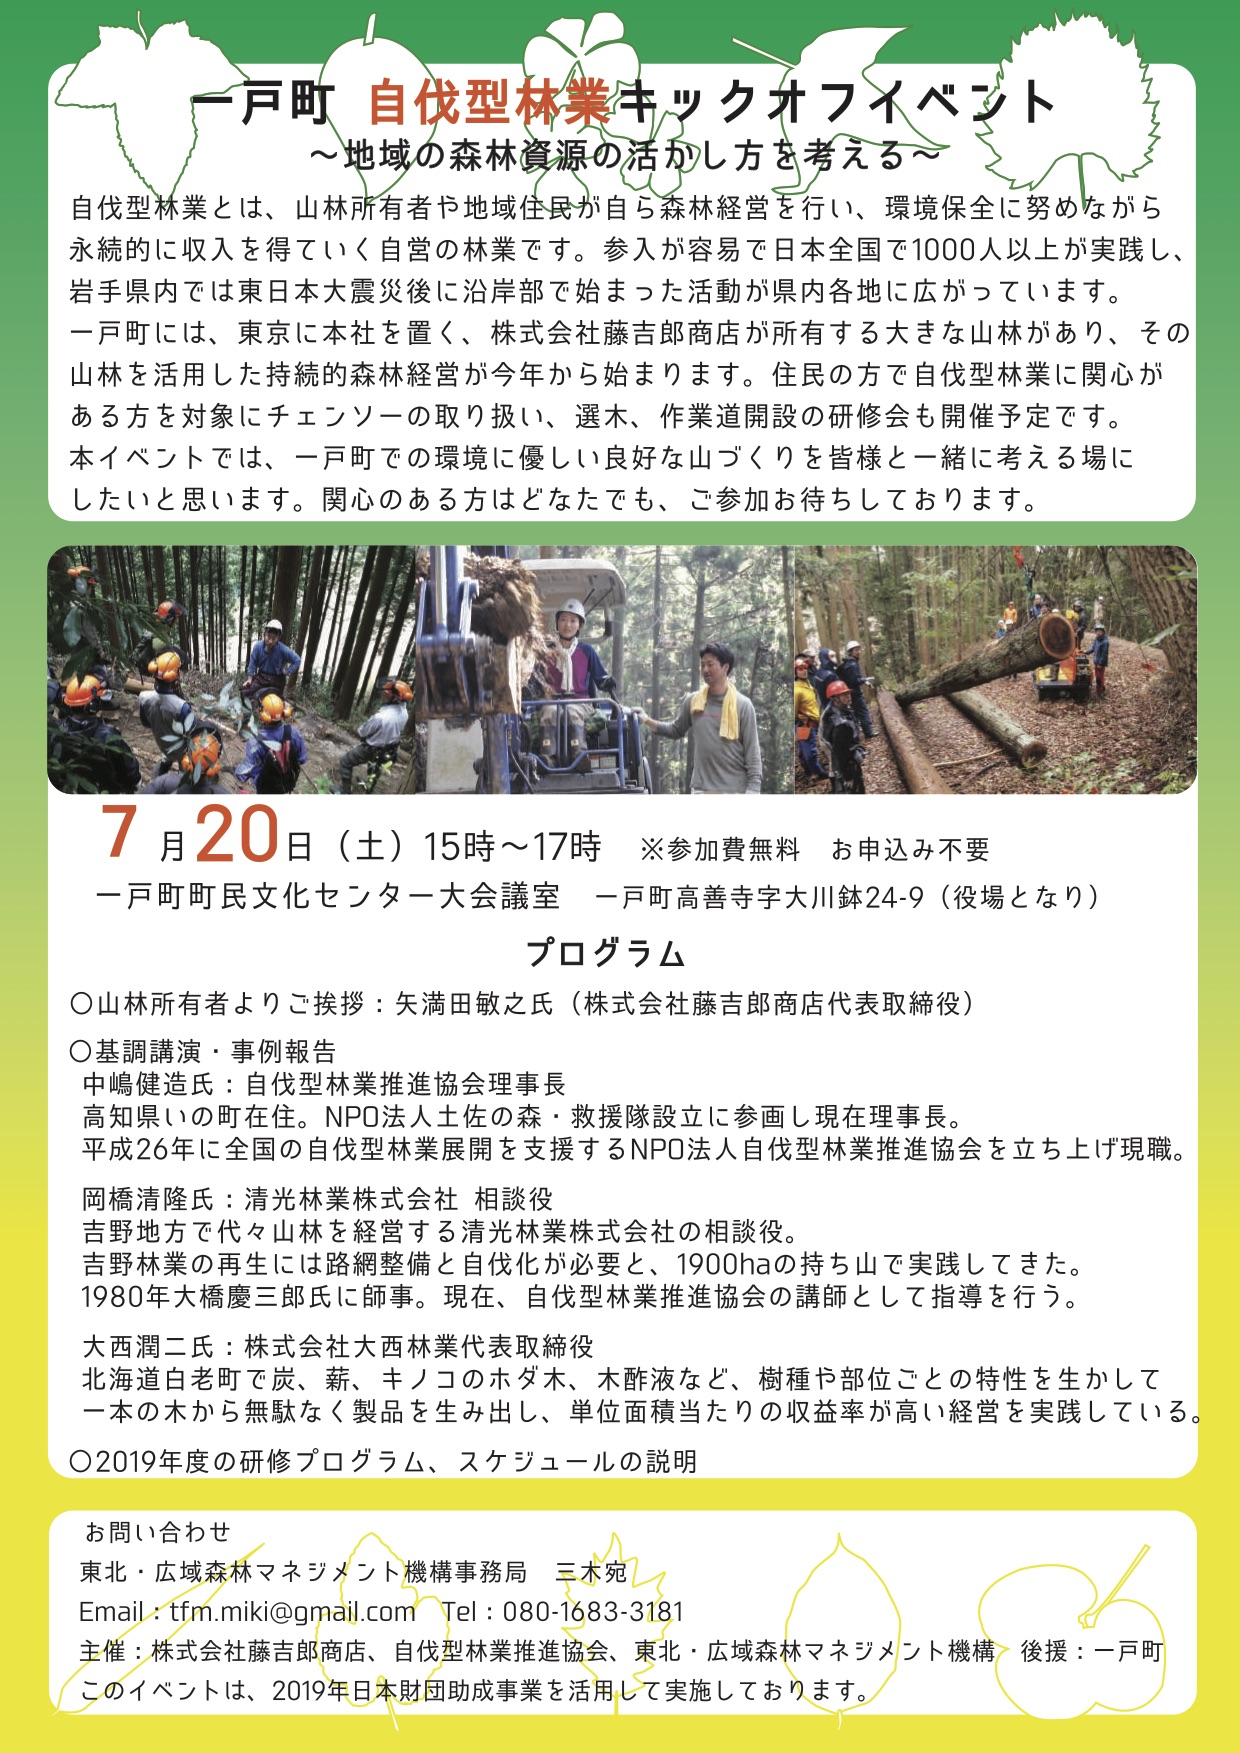 7月20日は岩手県一戸町で「自伐型林業キックオフイベント」開催